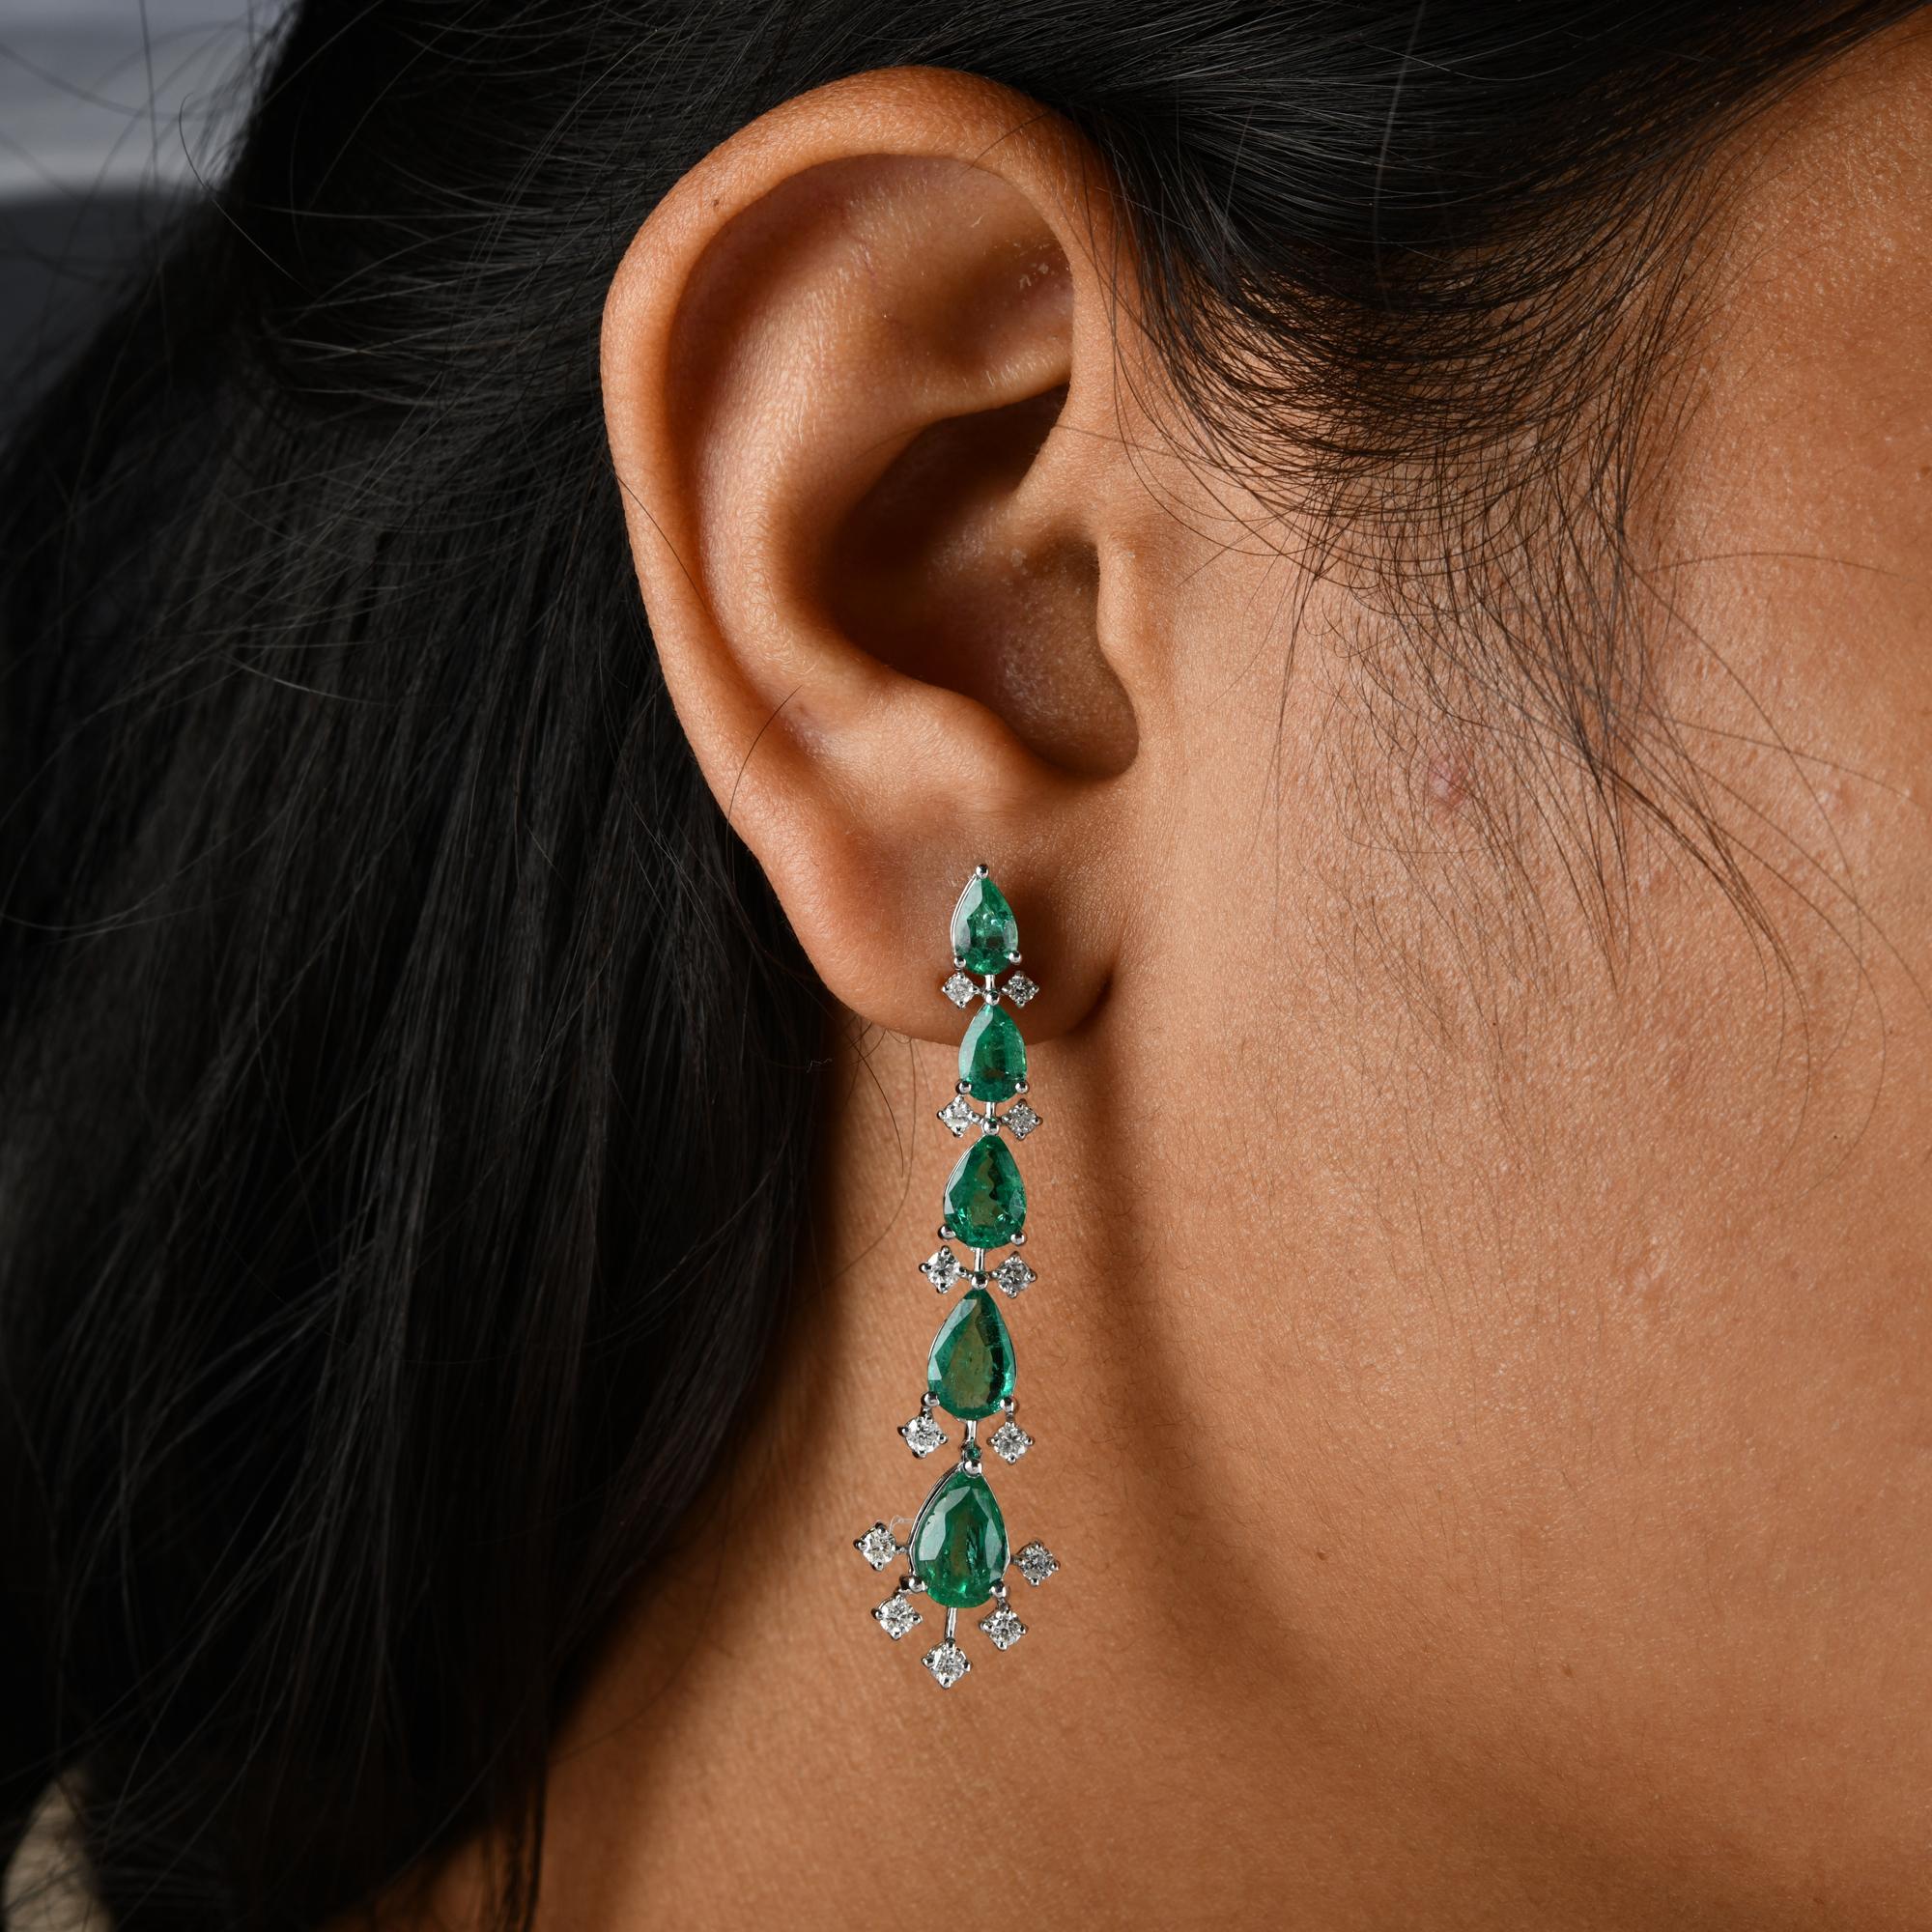 Wir stellen Ihnen unsere bezaubernden Smaragd-Ohrringe vor, die sorgfältig aus 18 Karat Weißgold gefertigt und mit strahlenden Diamanten verziert sind. Diese Ohrringe sind eine faszinierende Mischung aus Eleganz und Luxus, die Ihre Ohren mit